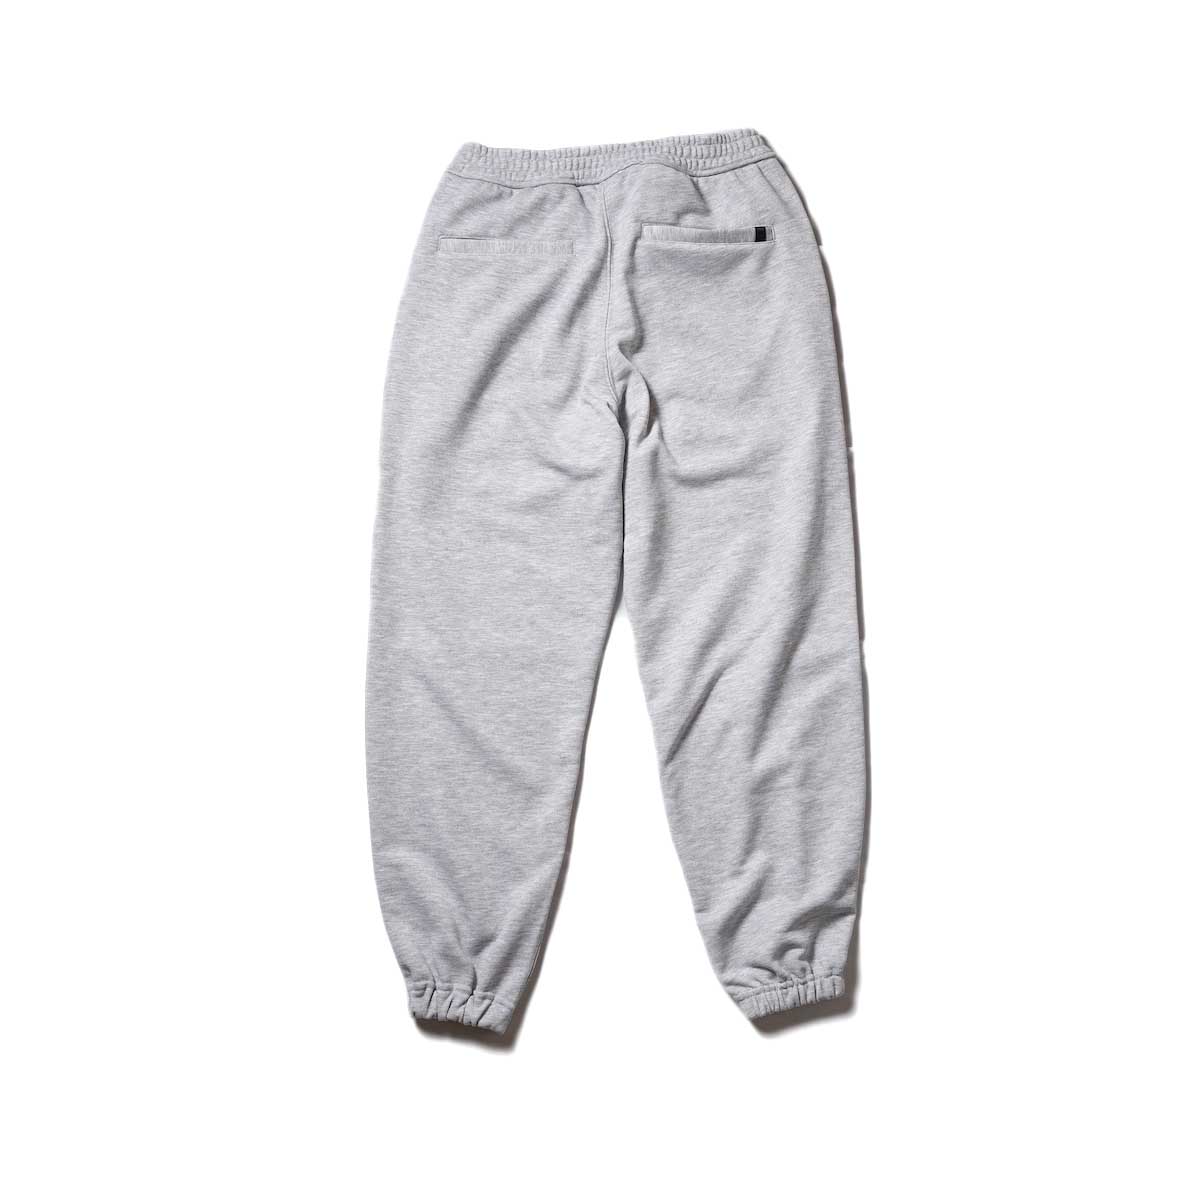 DAIWA PIER39 / Tech Sweat Pants (Gray)背面